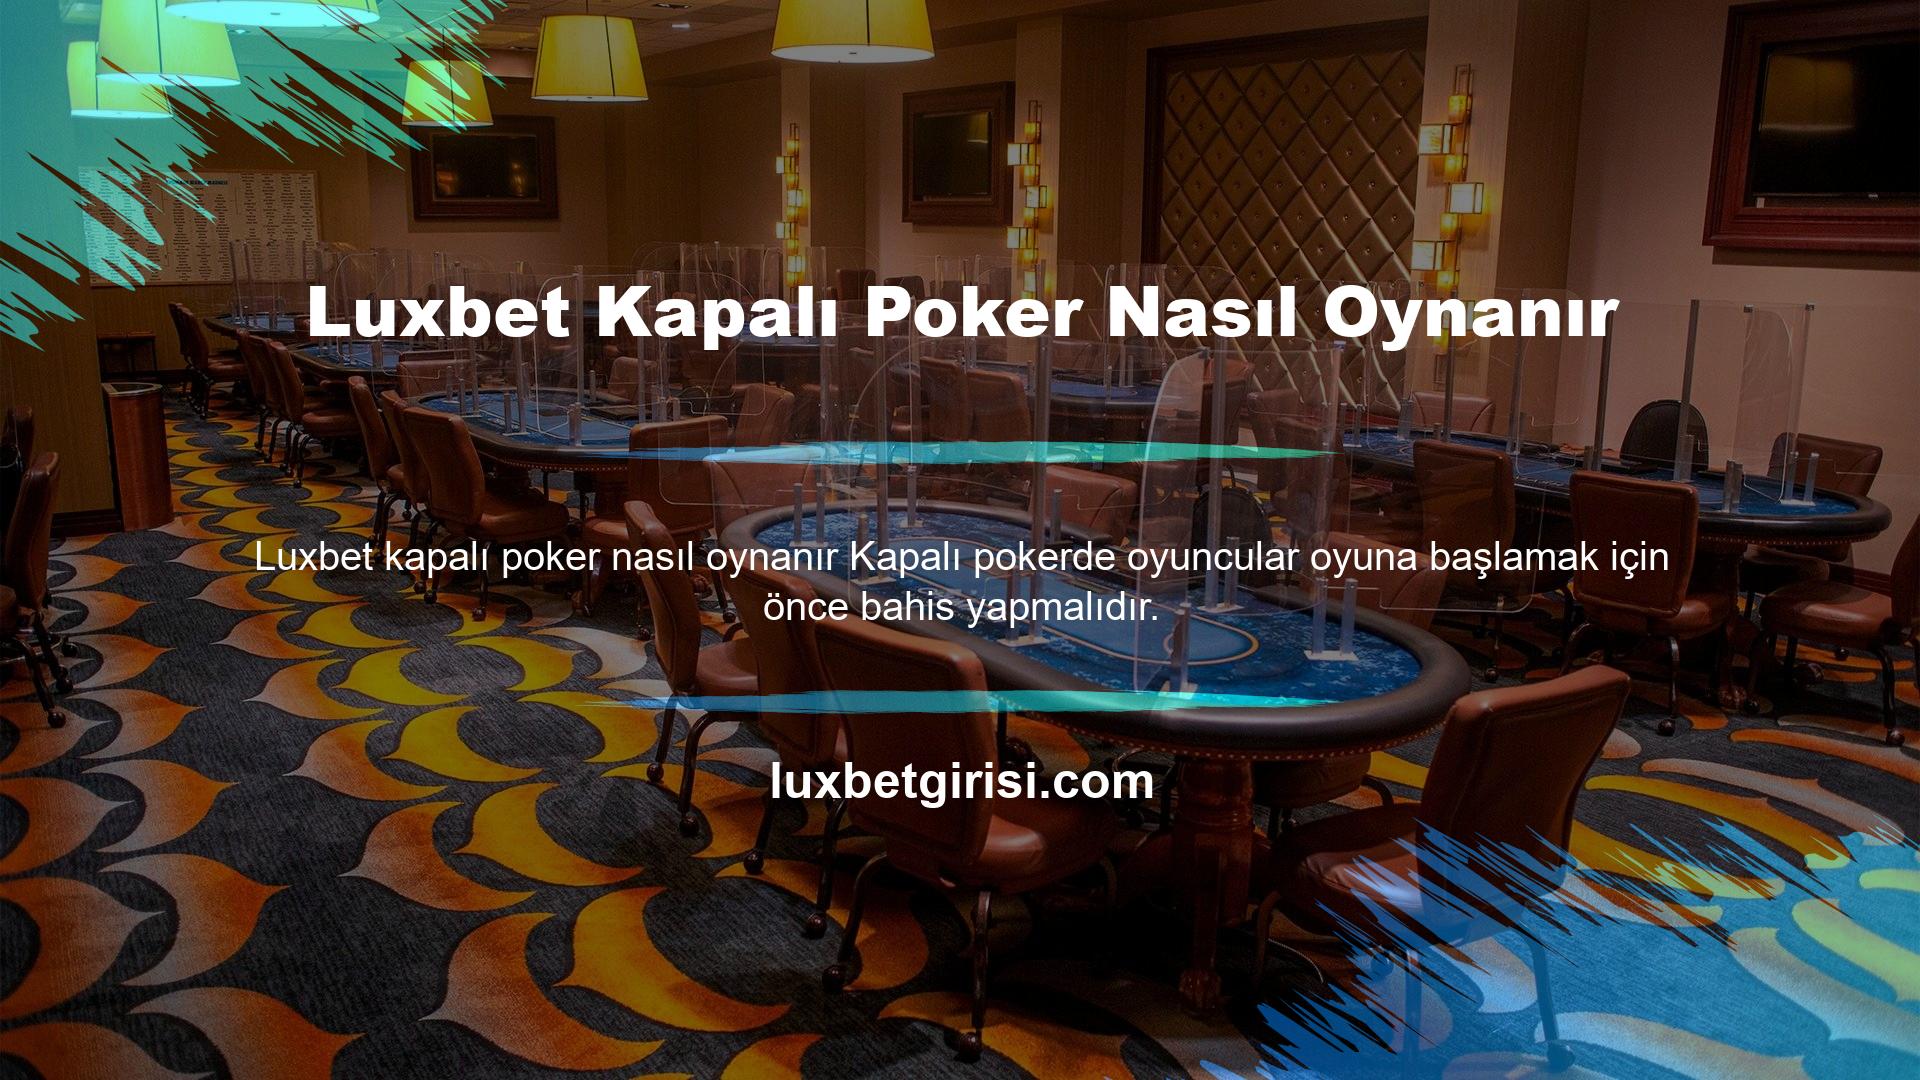 Luxbet Kapalı Poker Nasıl Oynanır